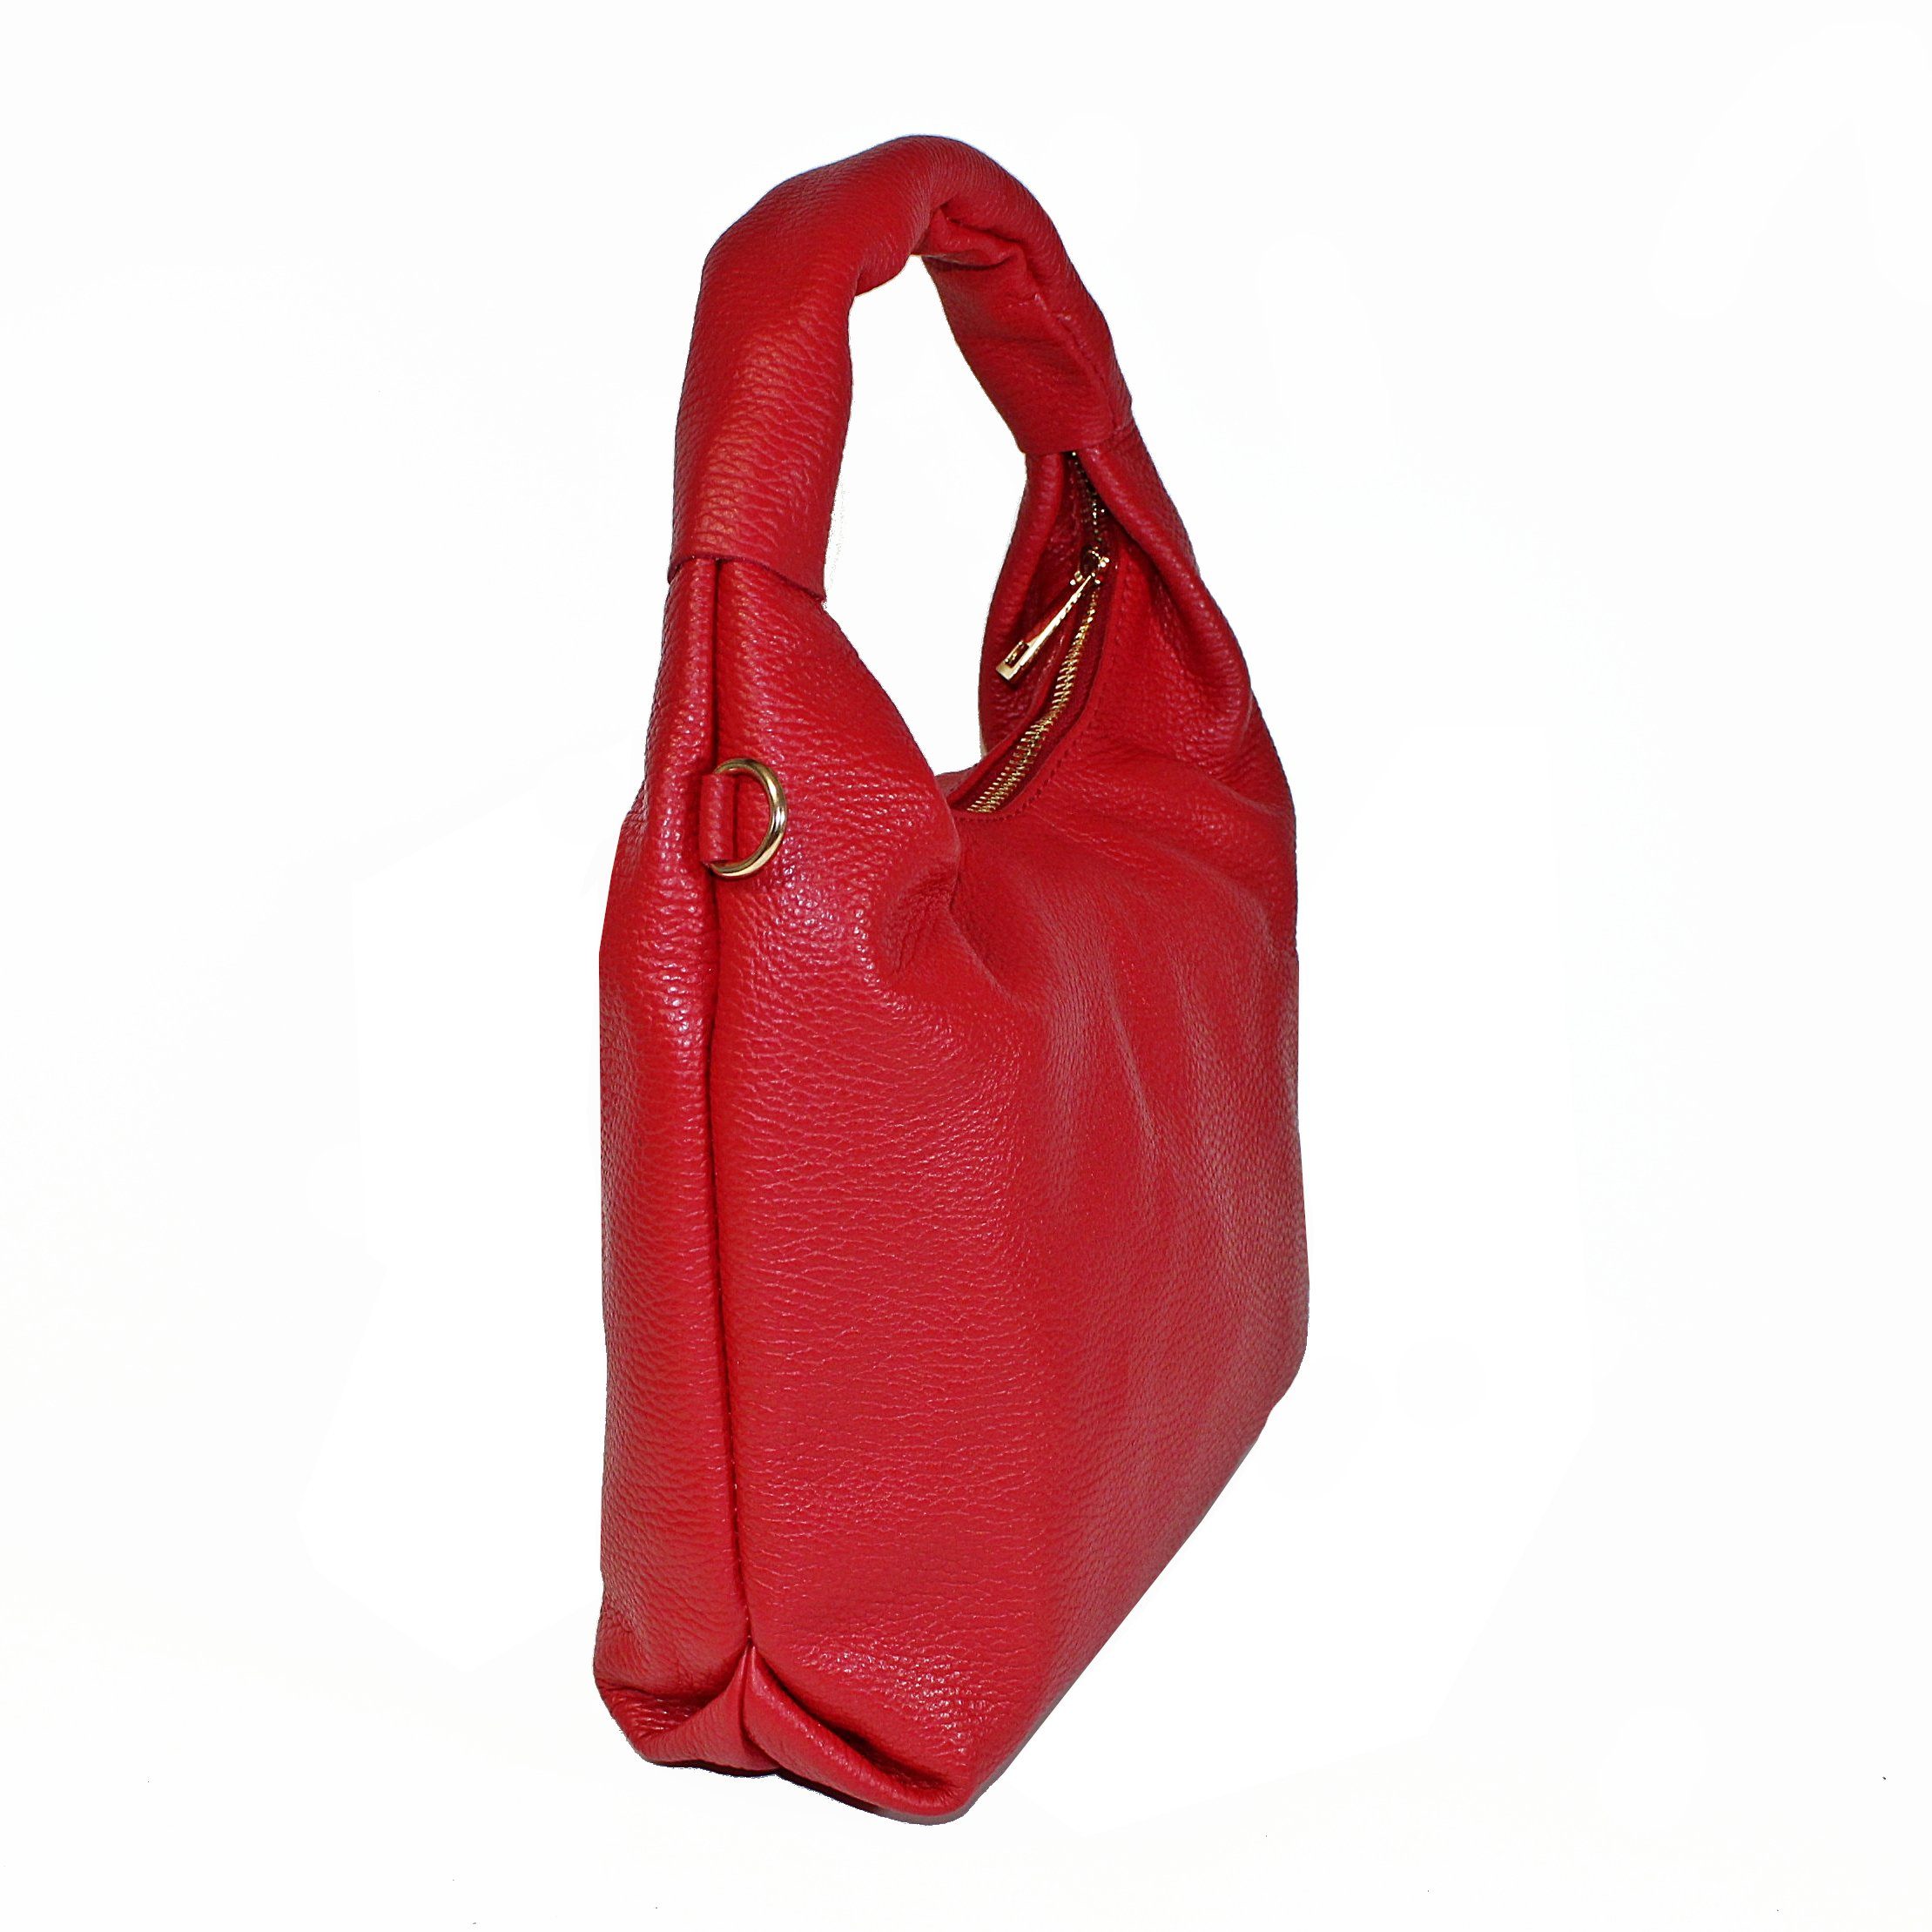 fs-bags Hobo Mini Hobo in italy Rot fs9103, Made